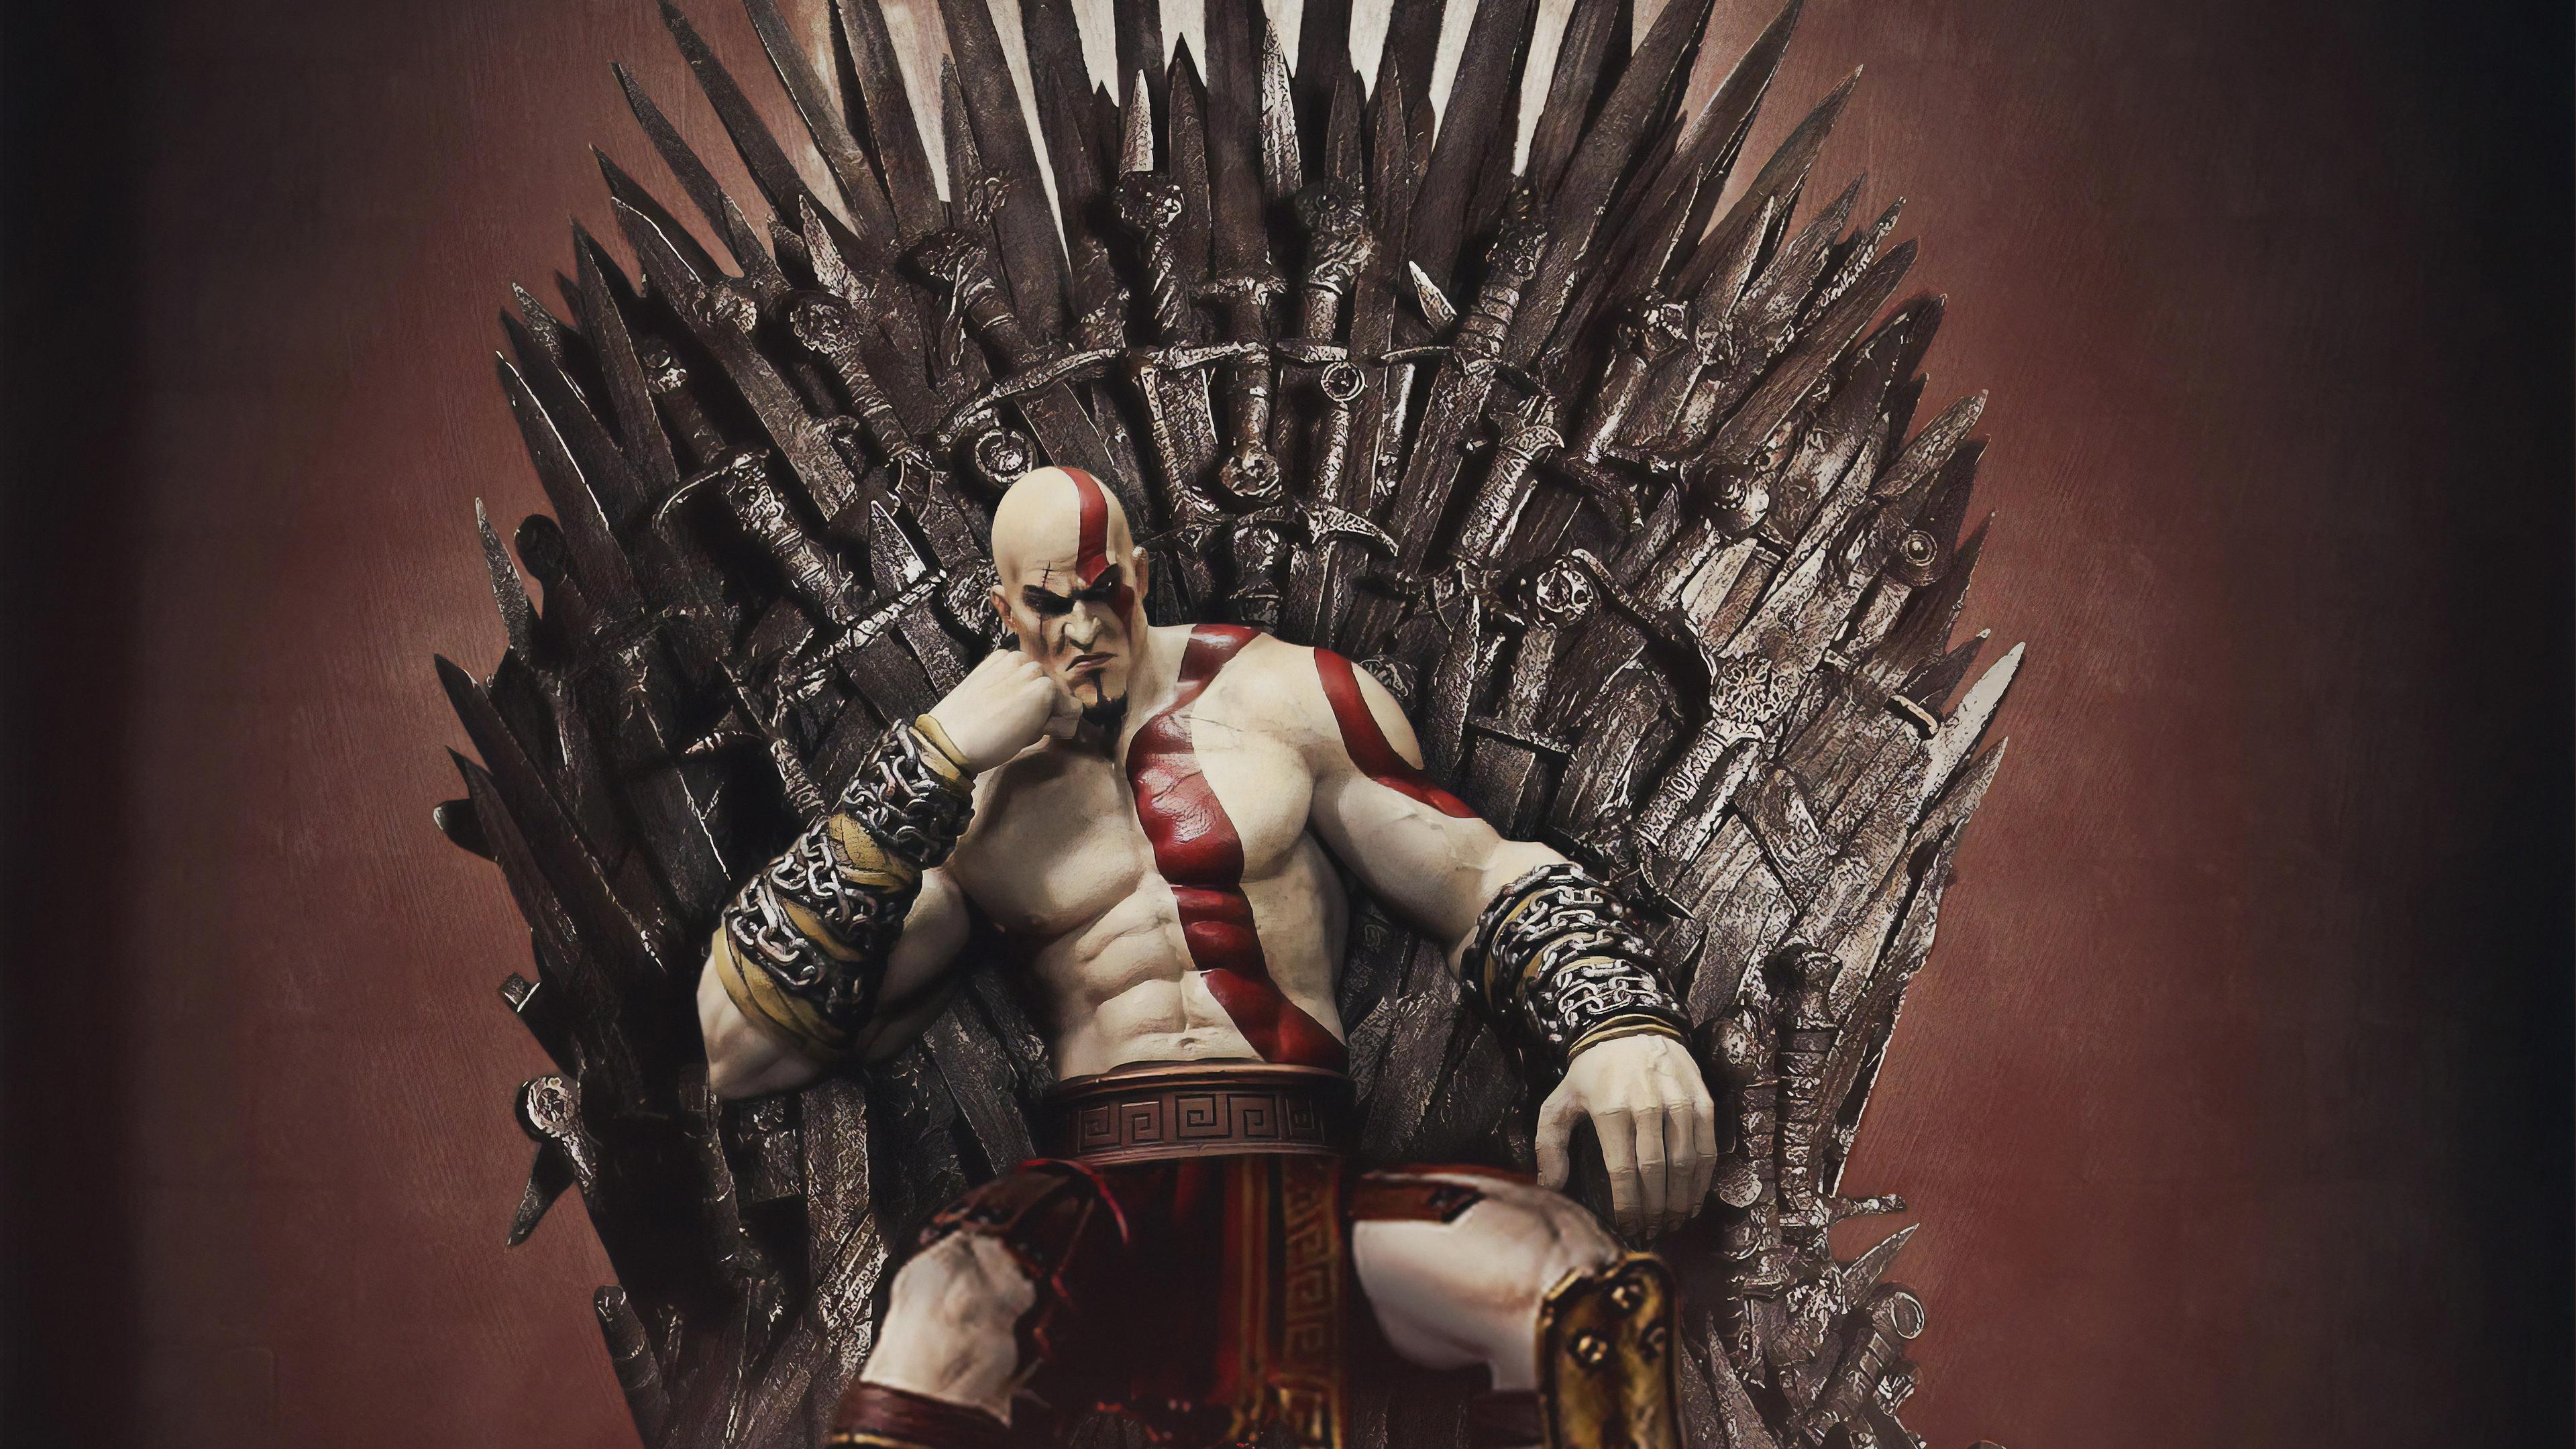 Ngồi trên ngai vàng, Kratos trông thật uy quyền và đầy vị thế. Hãy cùng chiêm ngưỡng hình ảnh đầy mê hoặc này để hiểu rõ hơn về sức mạnh và địa vị của nhân vật này.